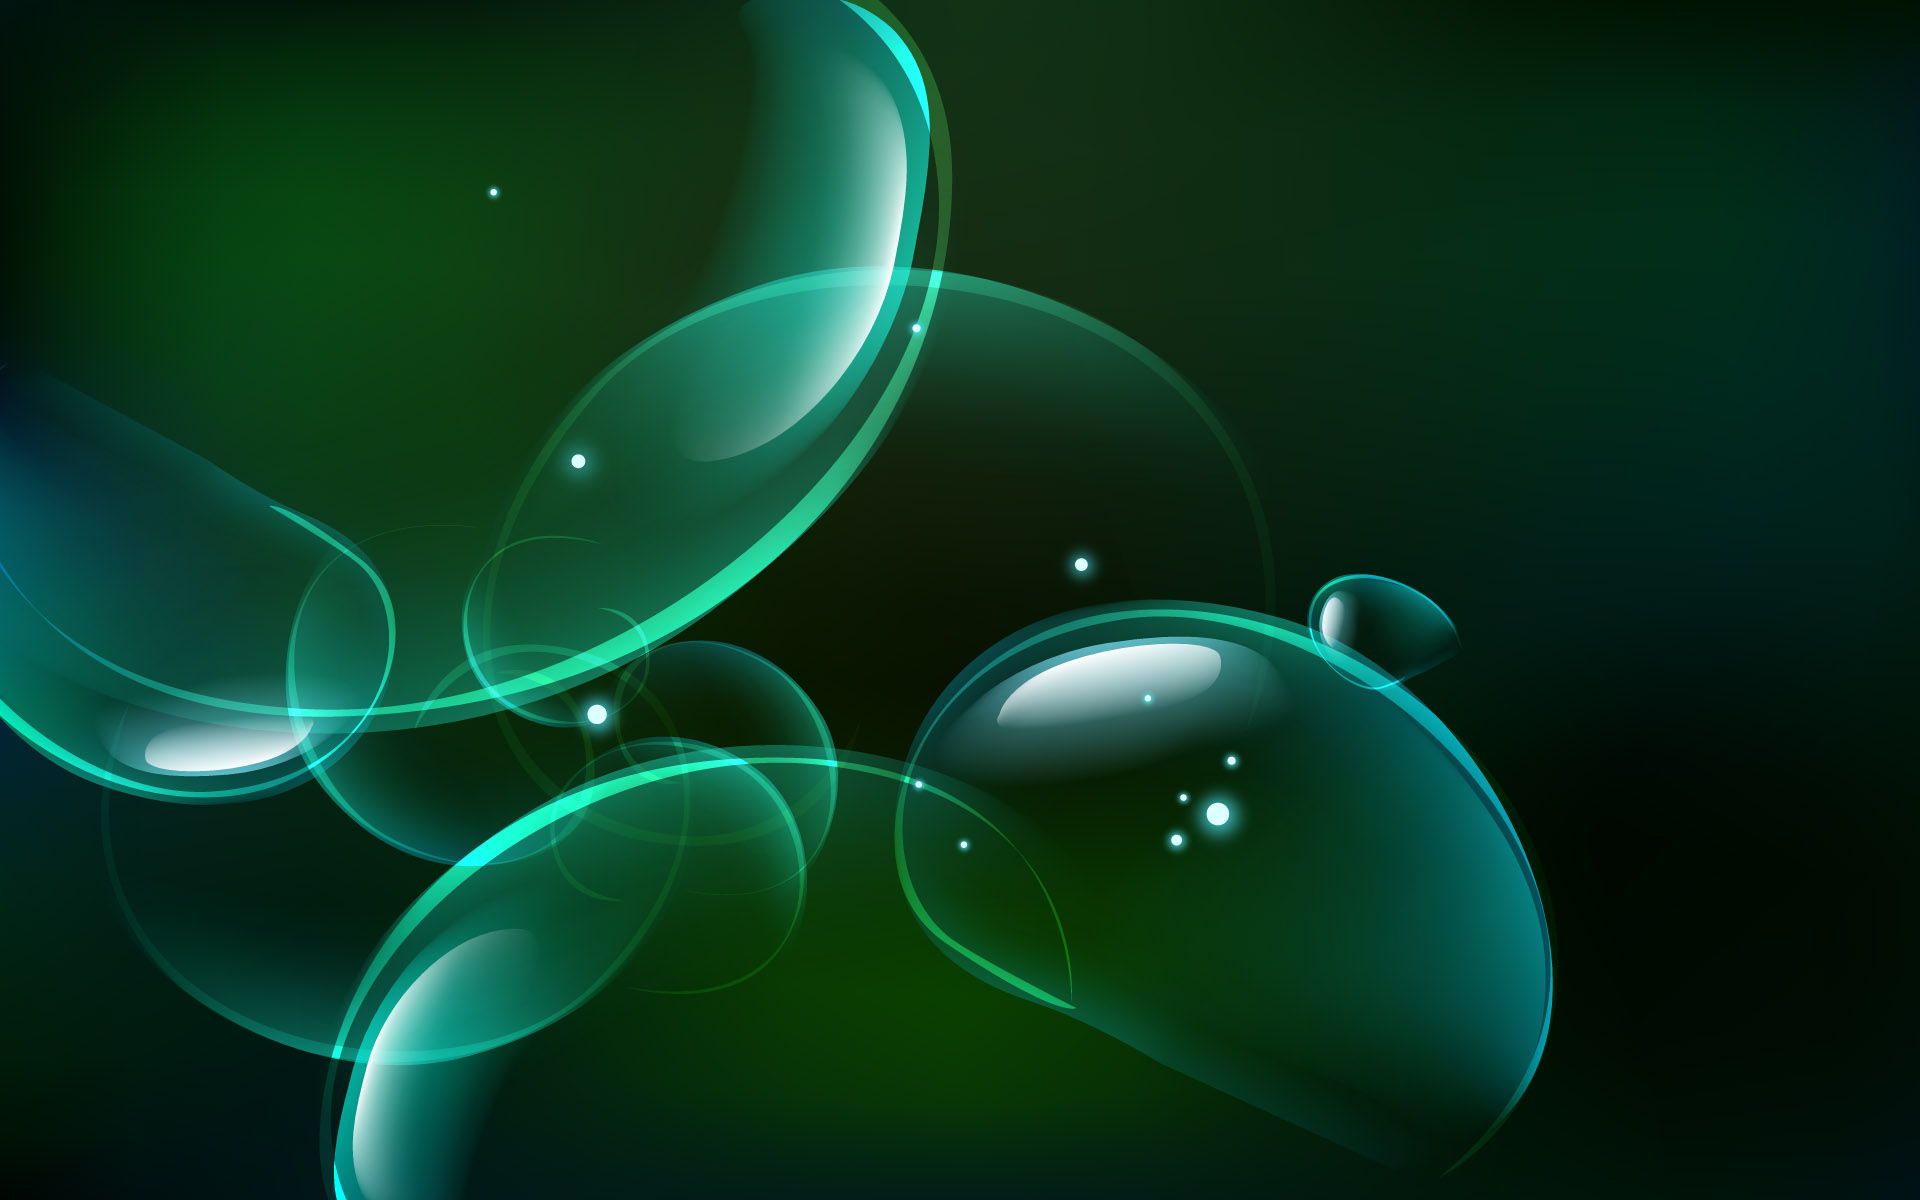 Previous, 3D-graphics - Green bubbles wallpaper